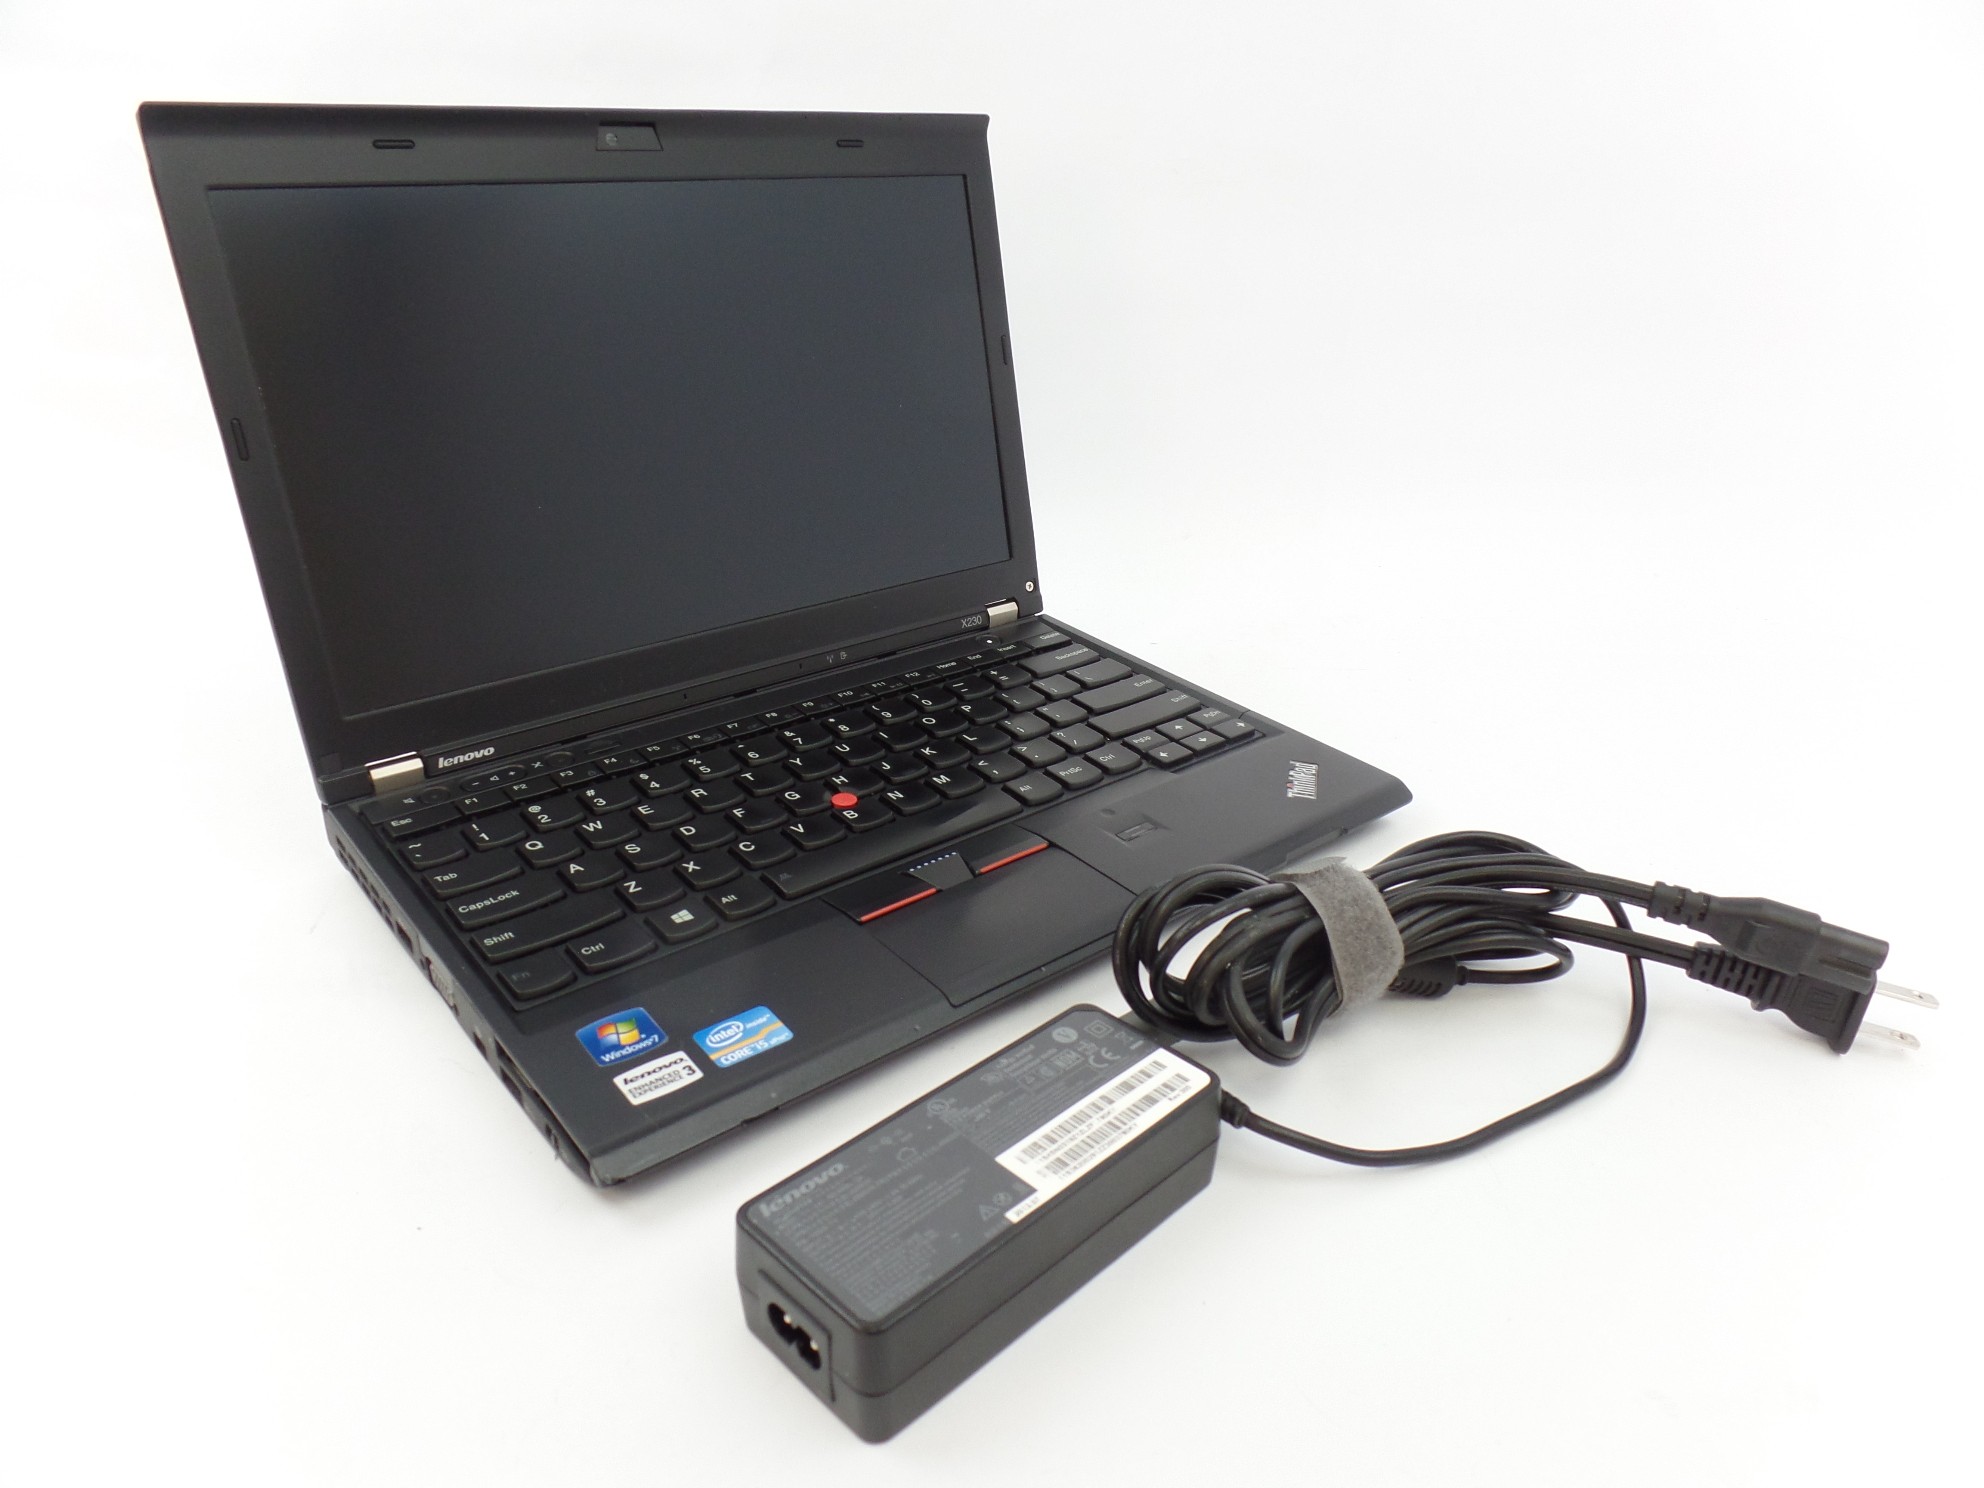 Lenovo ThinkPad x230 12.5" HD i5-3320M 2.6GHz 4GB 320GB HDD W7P Laptop 23252QM U